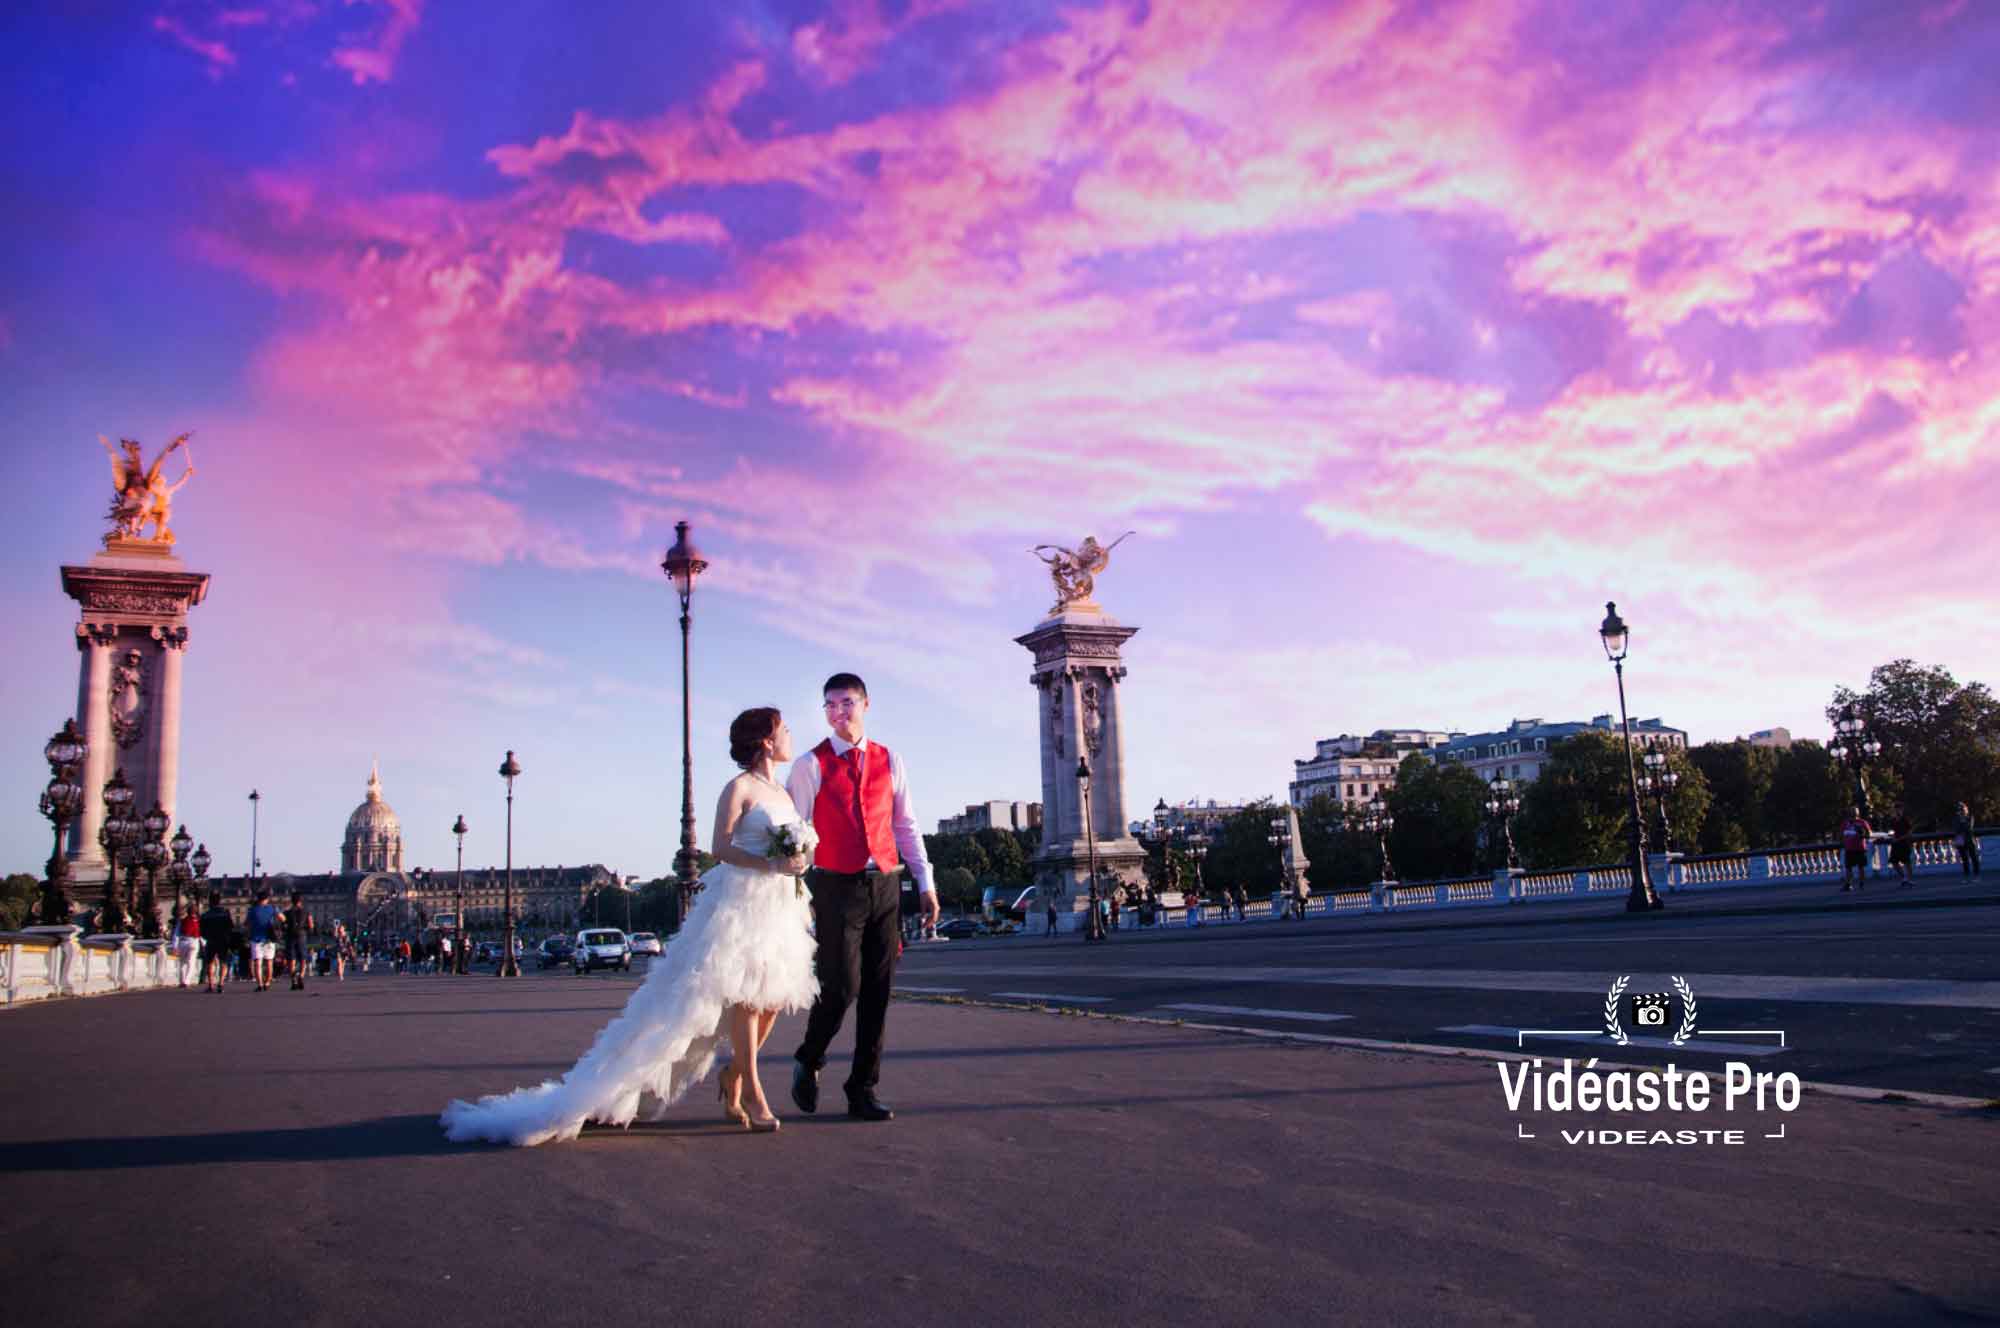 Chinese cameraman in Paris, Chinese wedding in Paris, Chinese wedding film in Paris